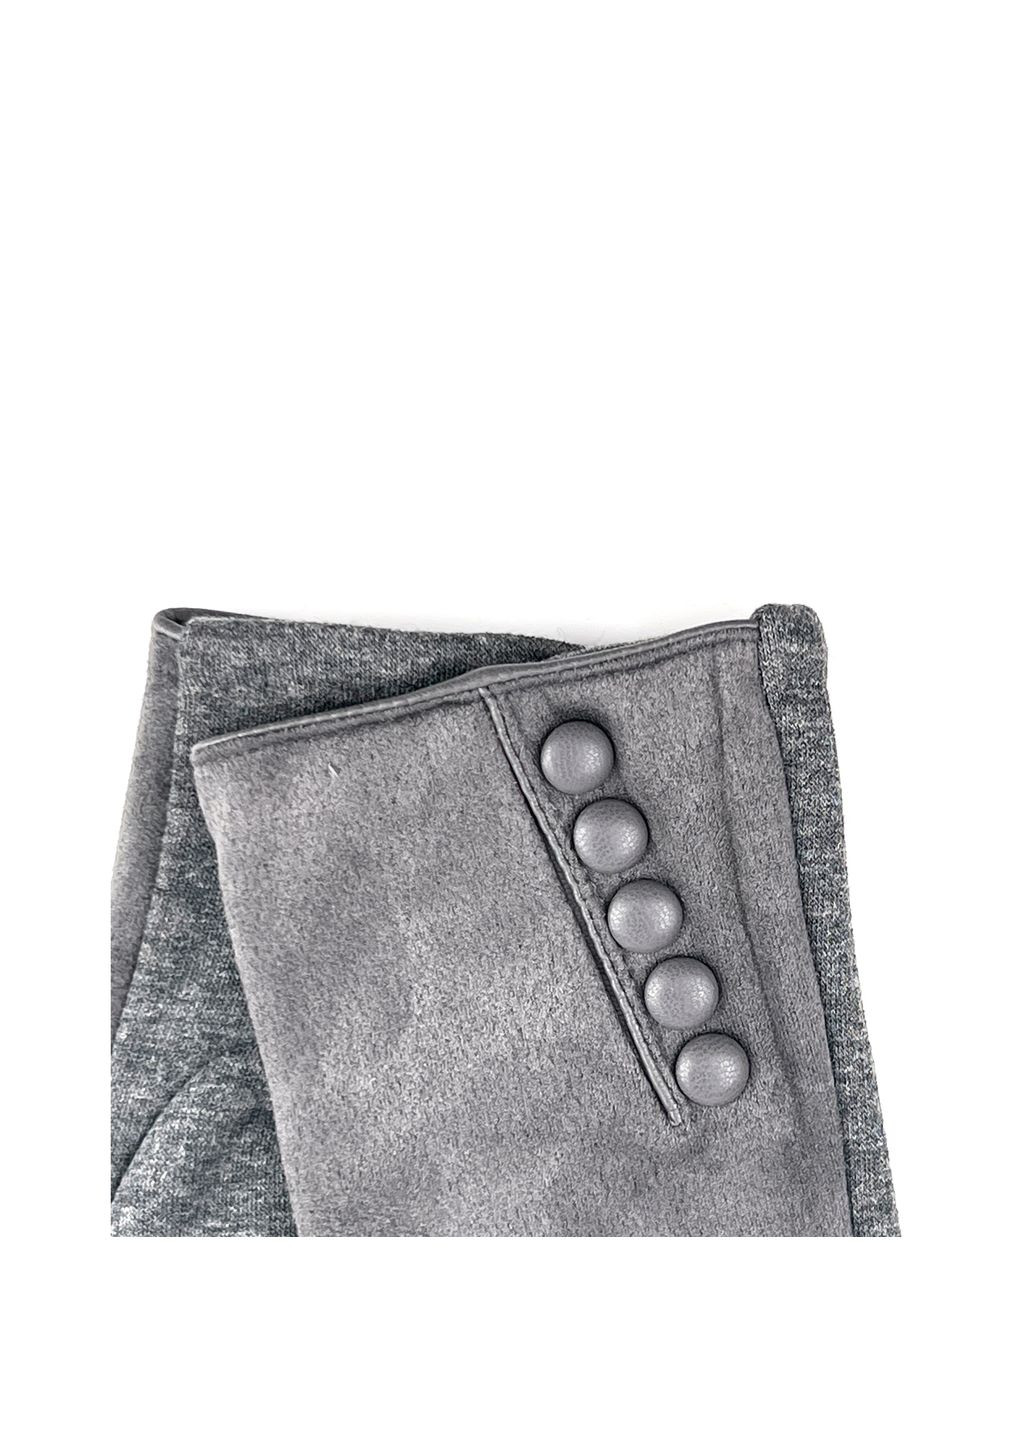 Перчатки Smart Touch женские комбинированные серые LuckyLOOK 670-717 (290278403)